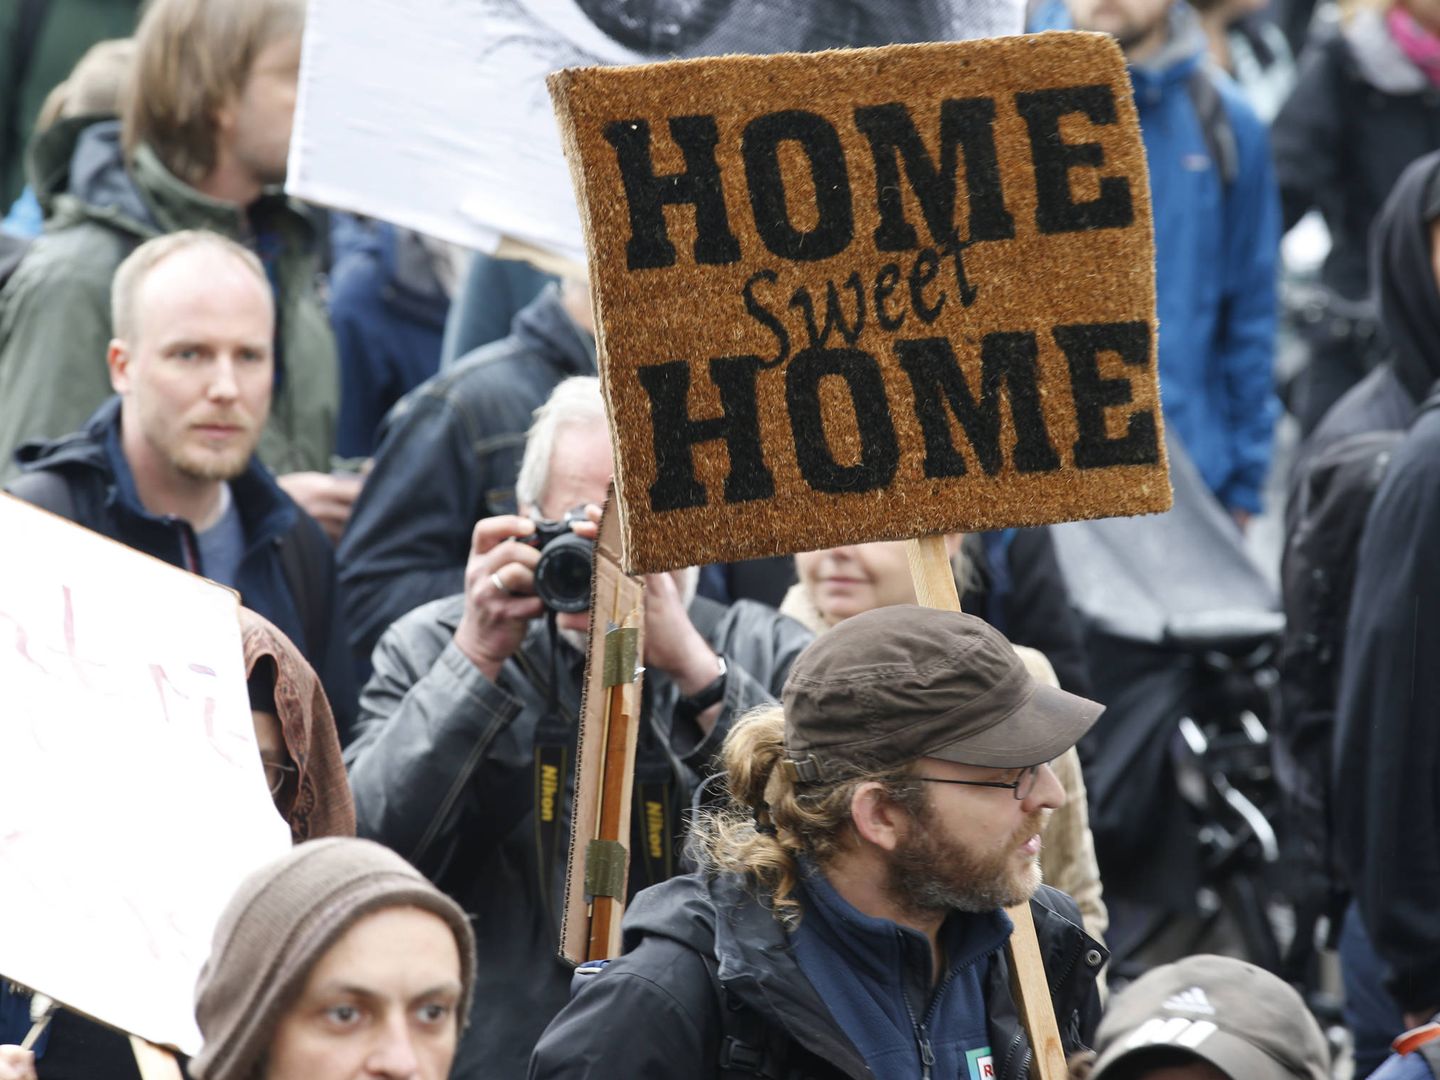 Manifestantes durante una protesta contra las subidas en los precios del alquiler, en Berlín, el 14 de abril de 2018. (Reuters)